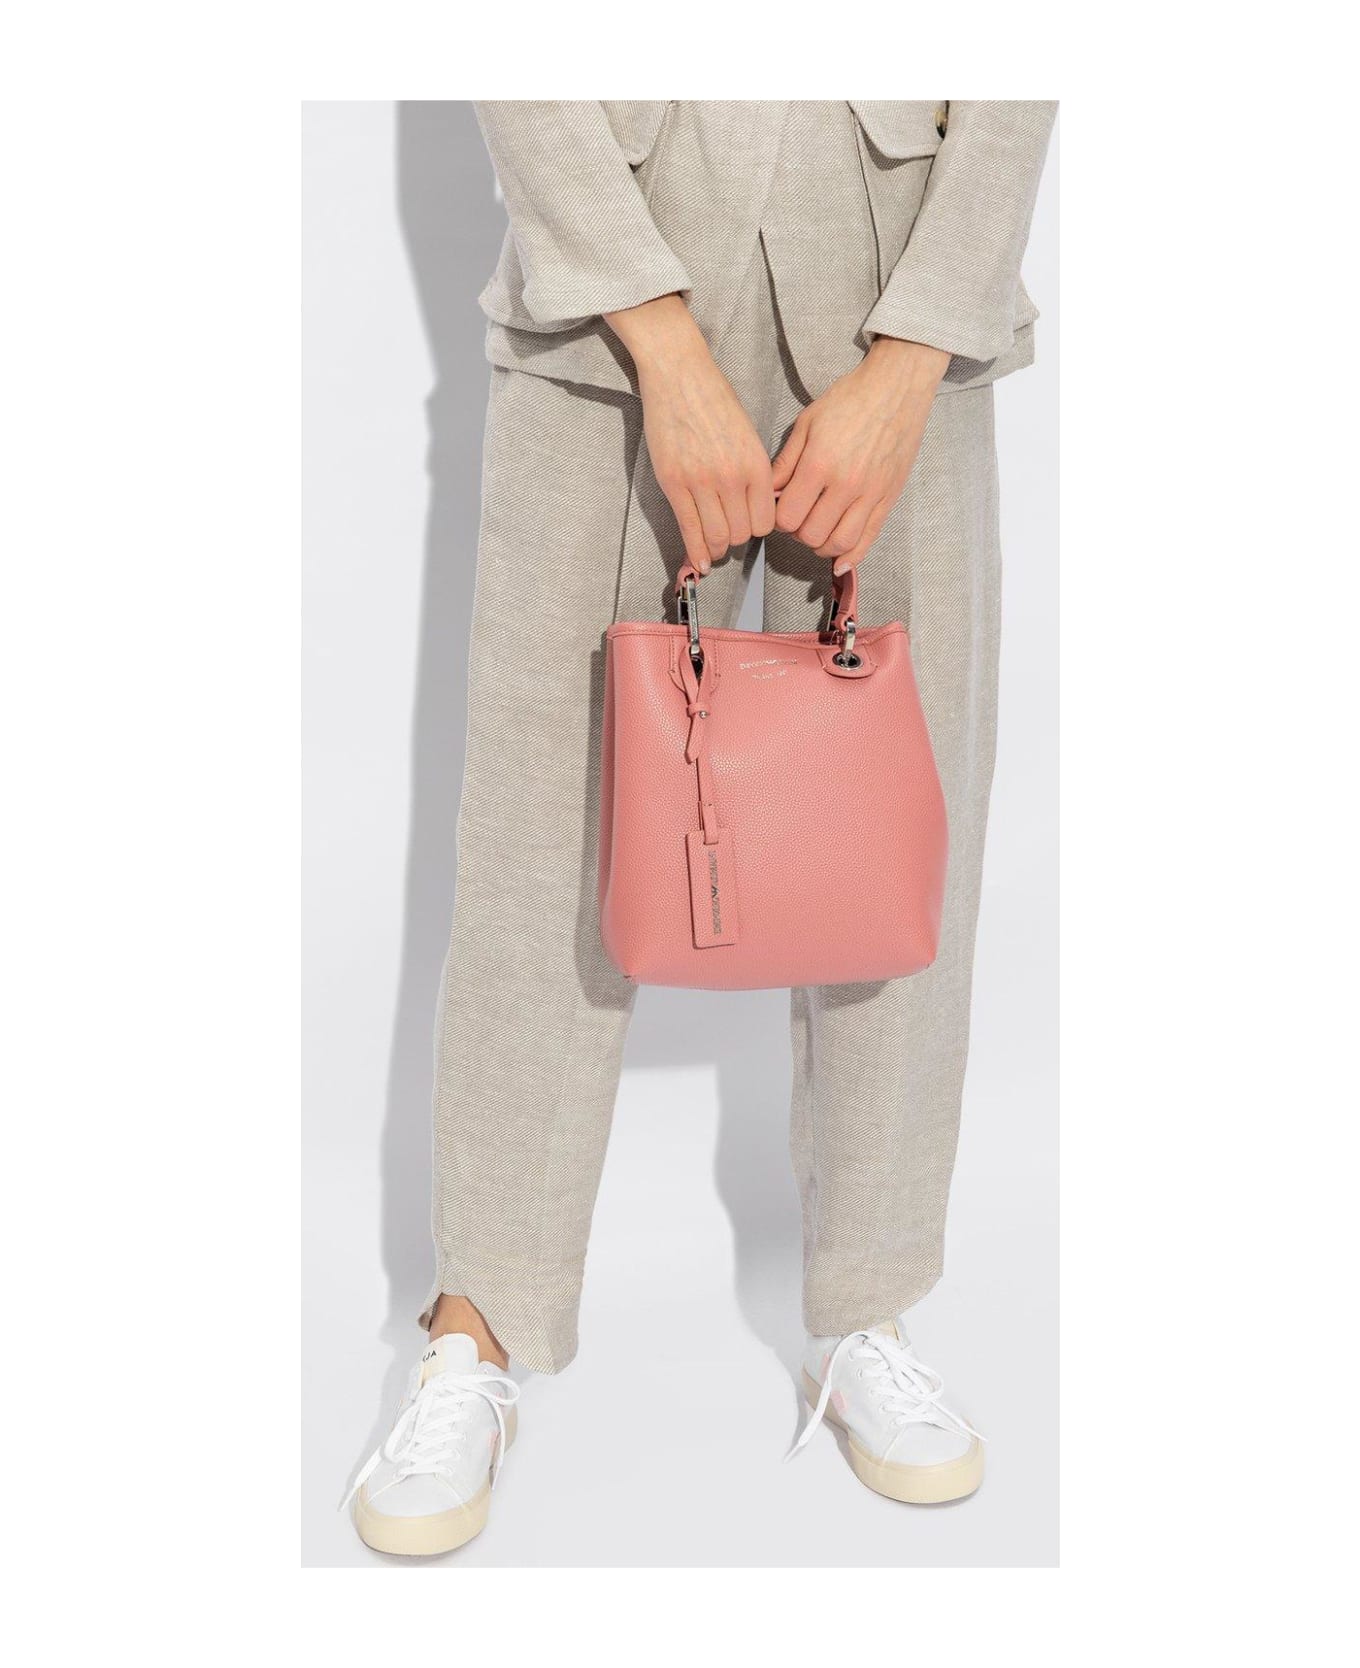 Emporio Armani Shoulder Bag - Pink